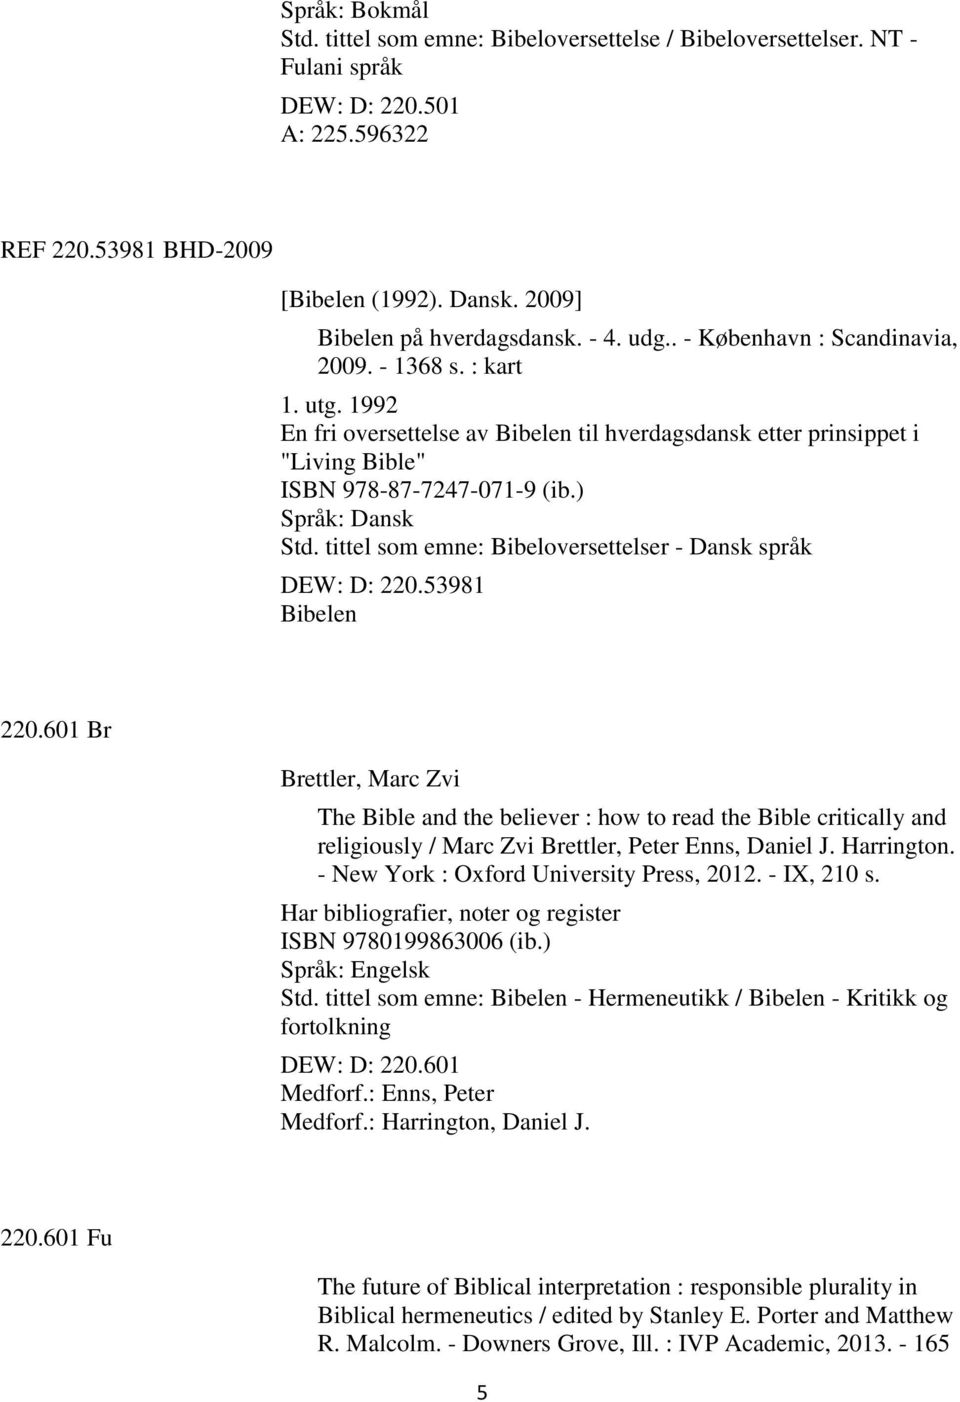 tittel som emne: Bibeloversettelser - Dansk språk DEW: D: 220.53981 Bibelen 220.